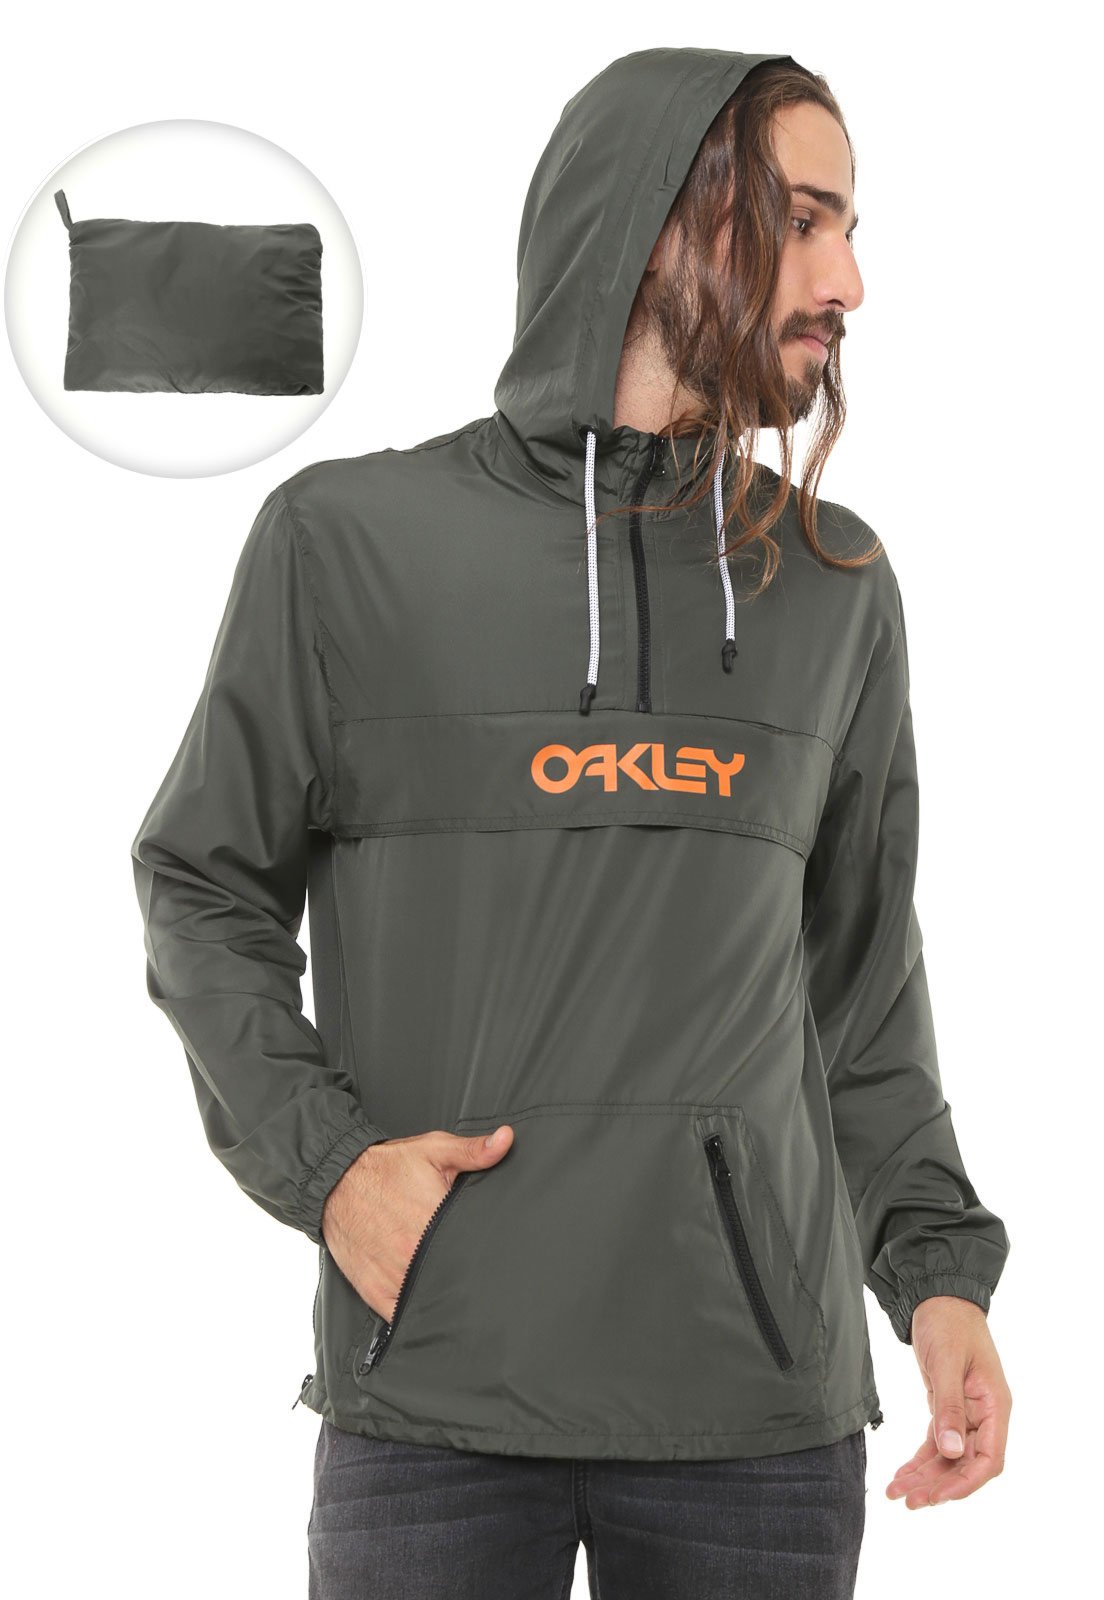 blusa da oakley feminina de calor